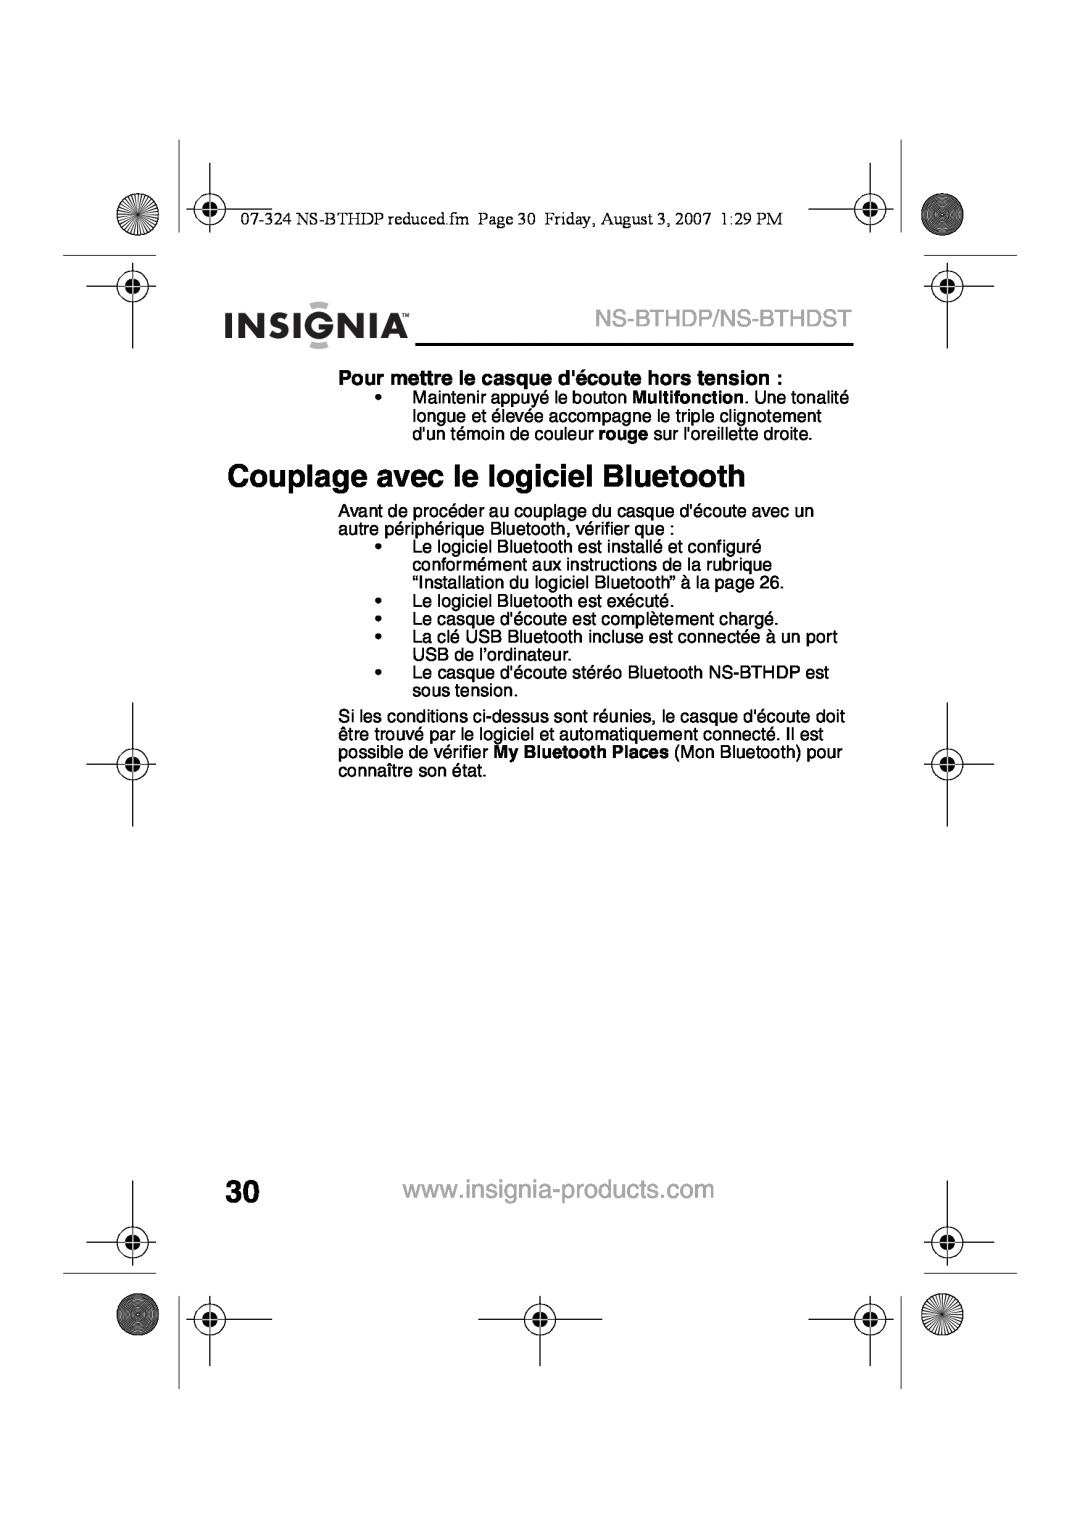 Insignia NS-BTHDST Couplage avec le logiciel Bluetooth, Ns-Bthdp/Ns-Bthdst, Pour mettre le casque découte hors tension 